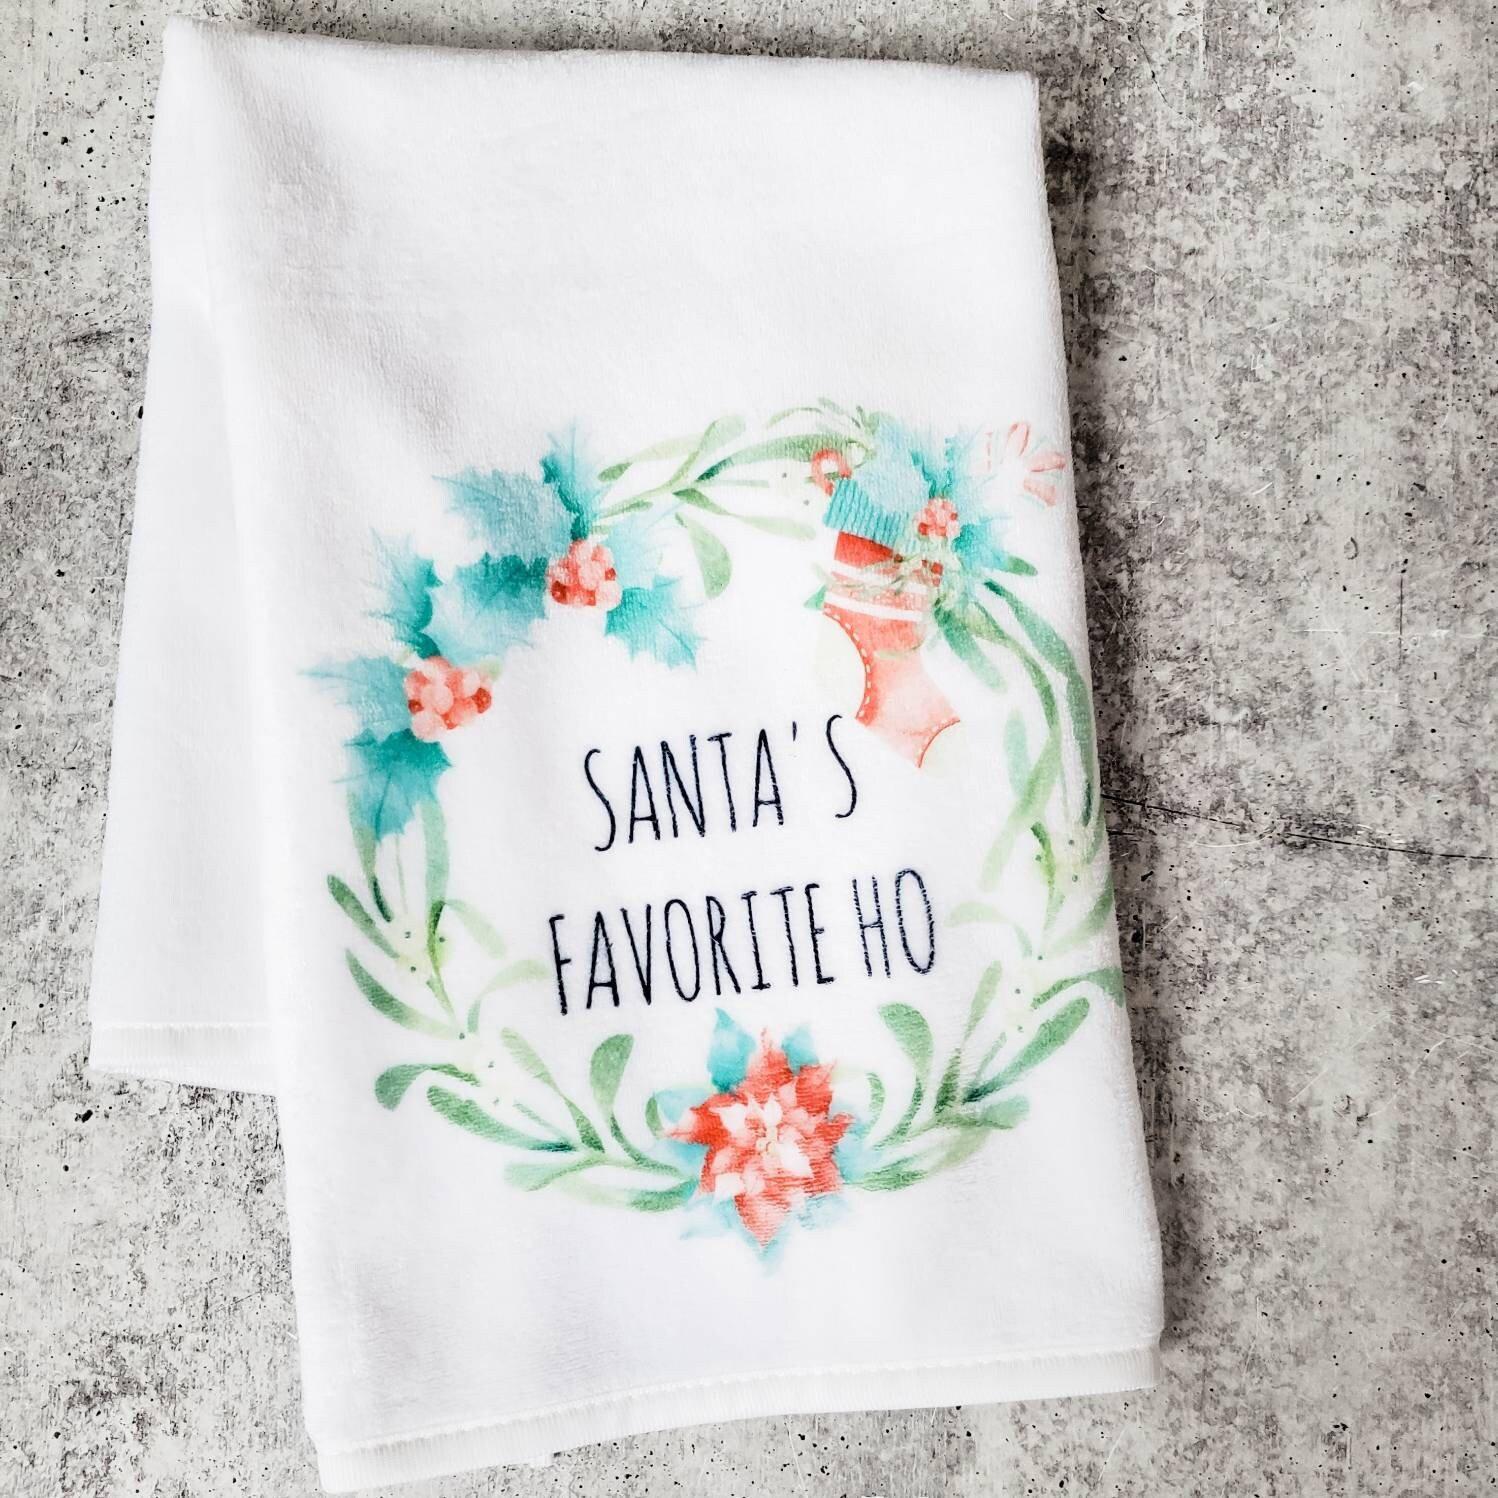 Santa's Favorite Ho Towel and Tumbler Gift Set Salt and Sparkle